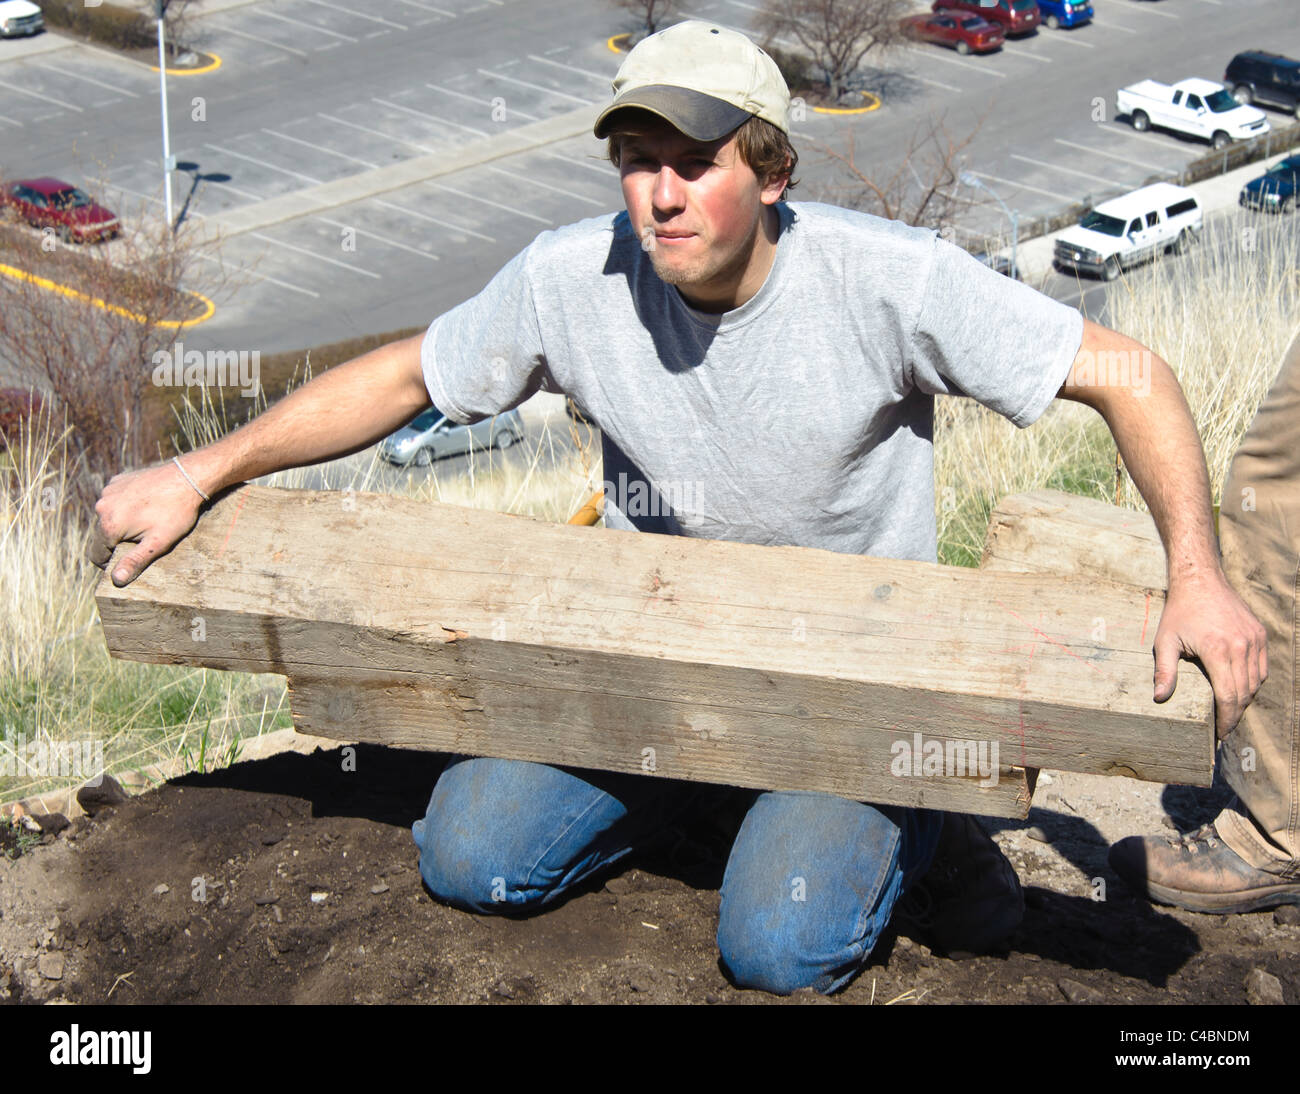 Eine männliche Freiwillige setzt den ersten Schritt auf die neue Basis, die sie bei der ersten kehre auf dem M-Trail bauen. Stockfoto